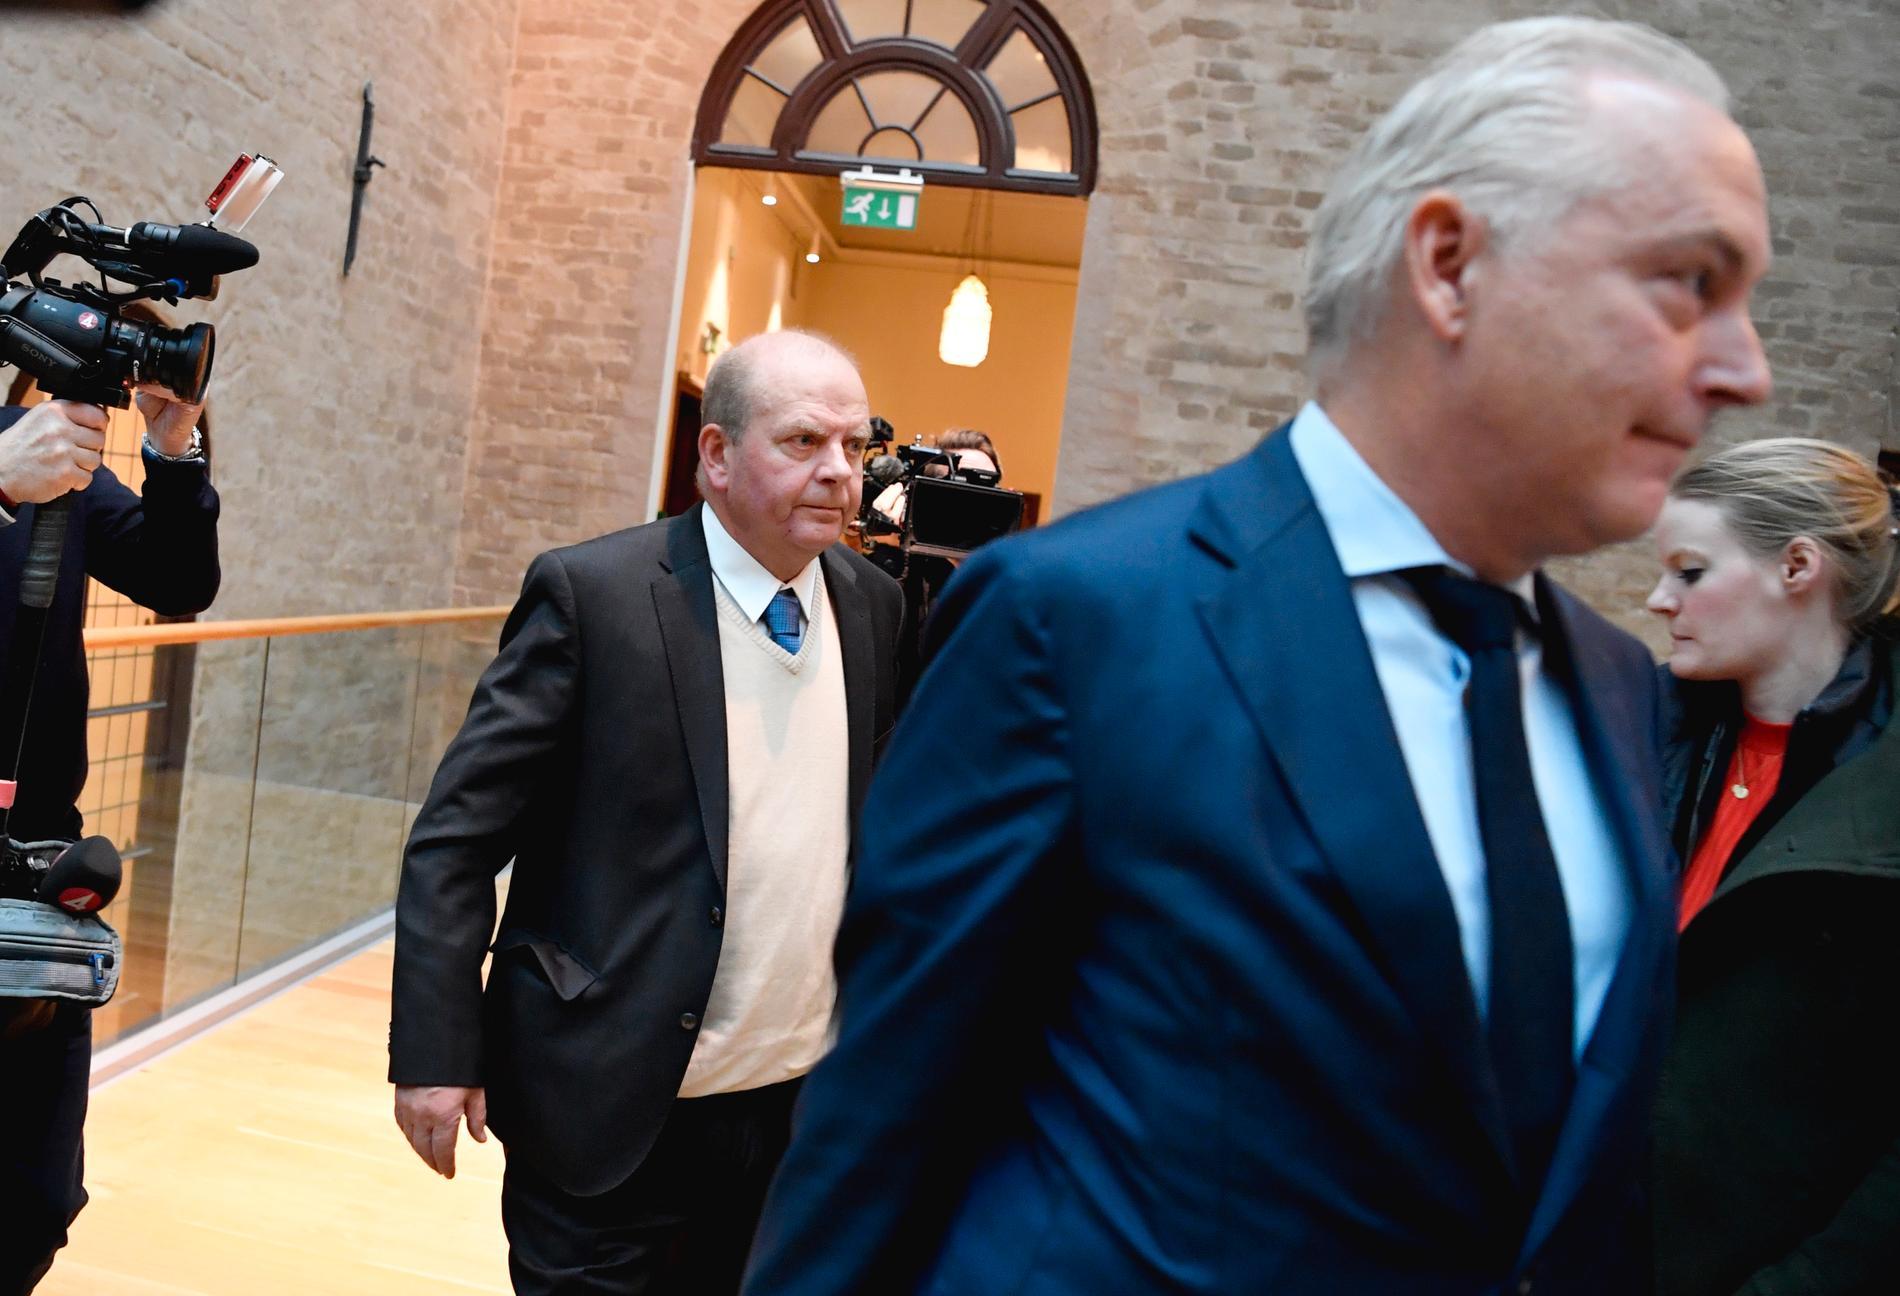 Två av målsägarna överklagar tingsrättens friande dom mot den förre landsbygdsministern Eskil Erlandsson (till vänster i bild), rapporterar Smålandsposten. Arkivbild.